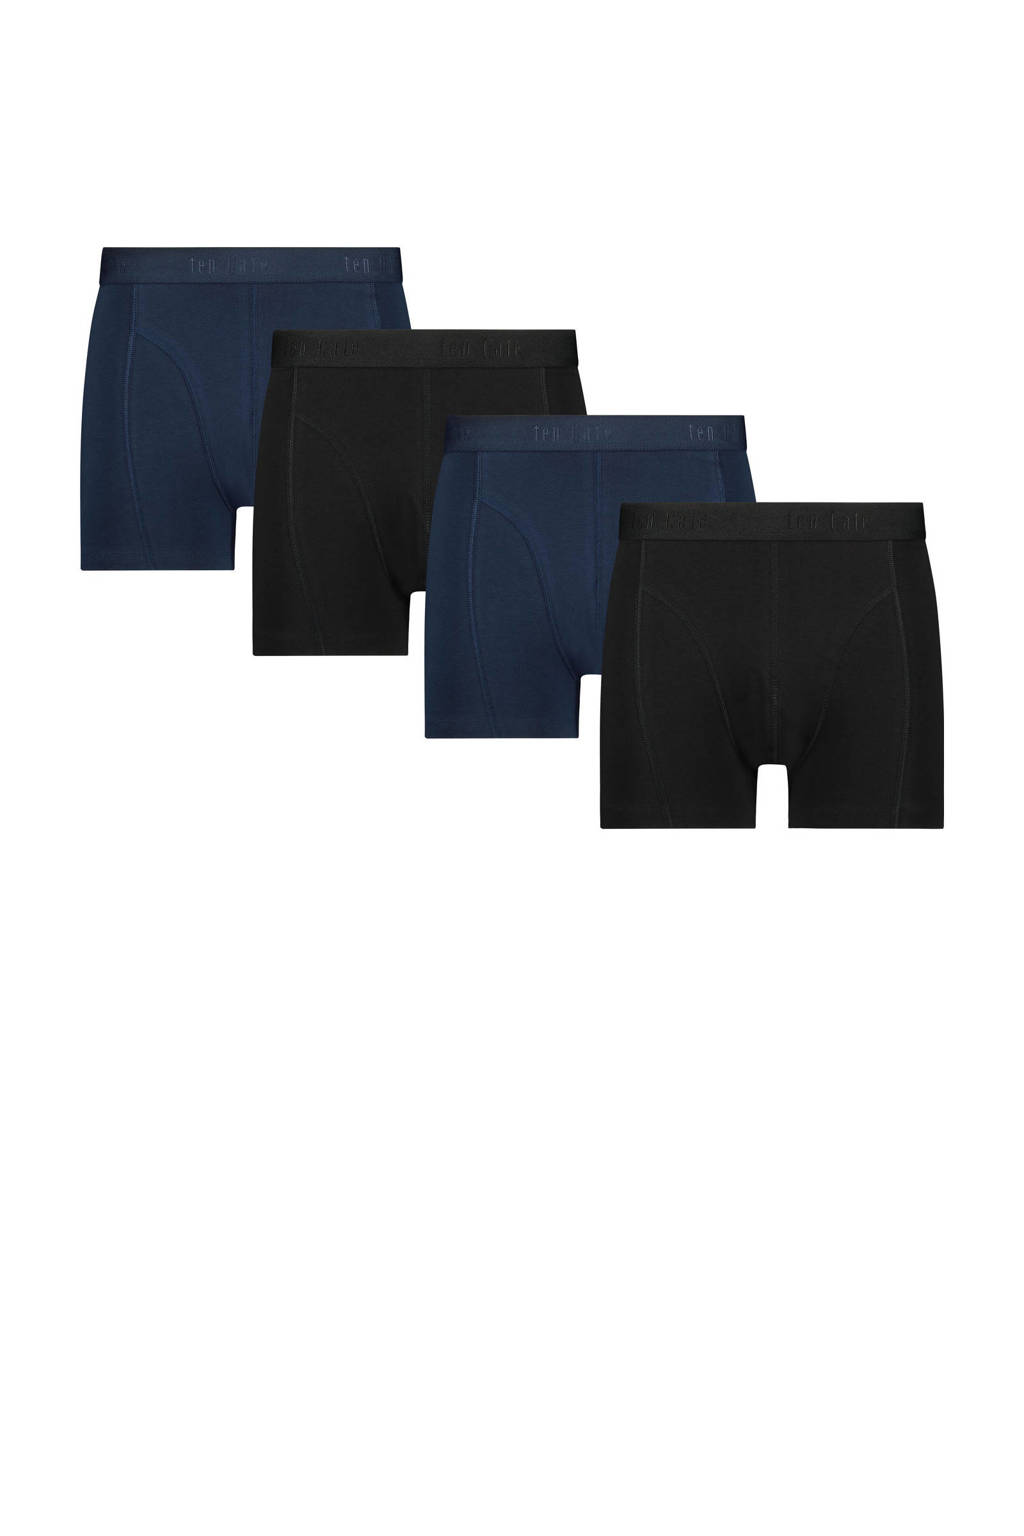 ten Cate Cotton Stretch boxershort (set van 4), Zwart/grijs/donkerblauw